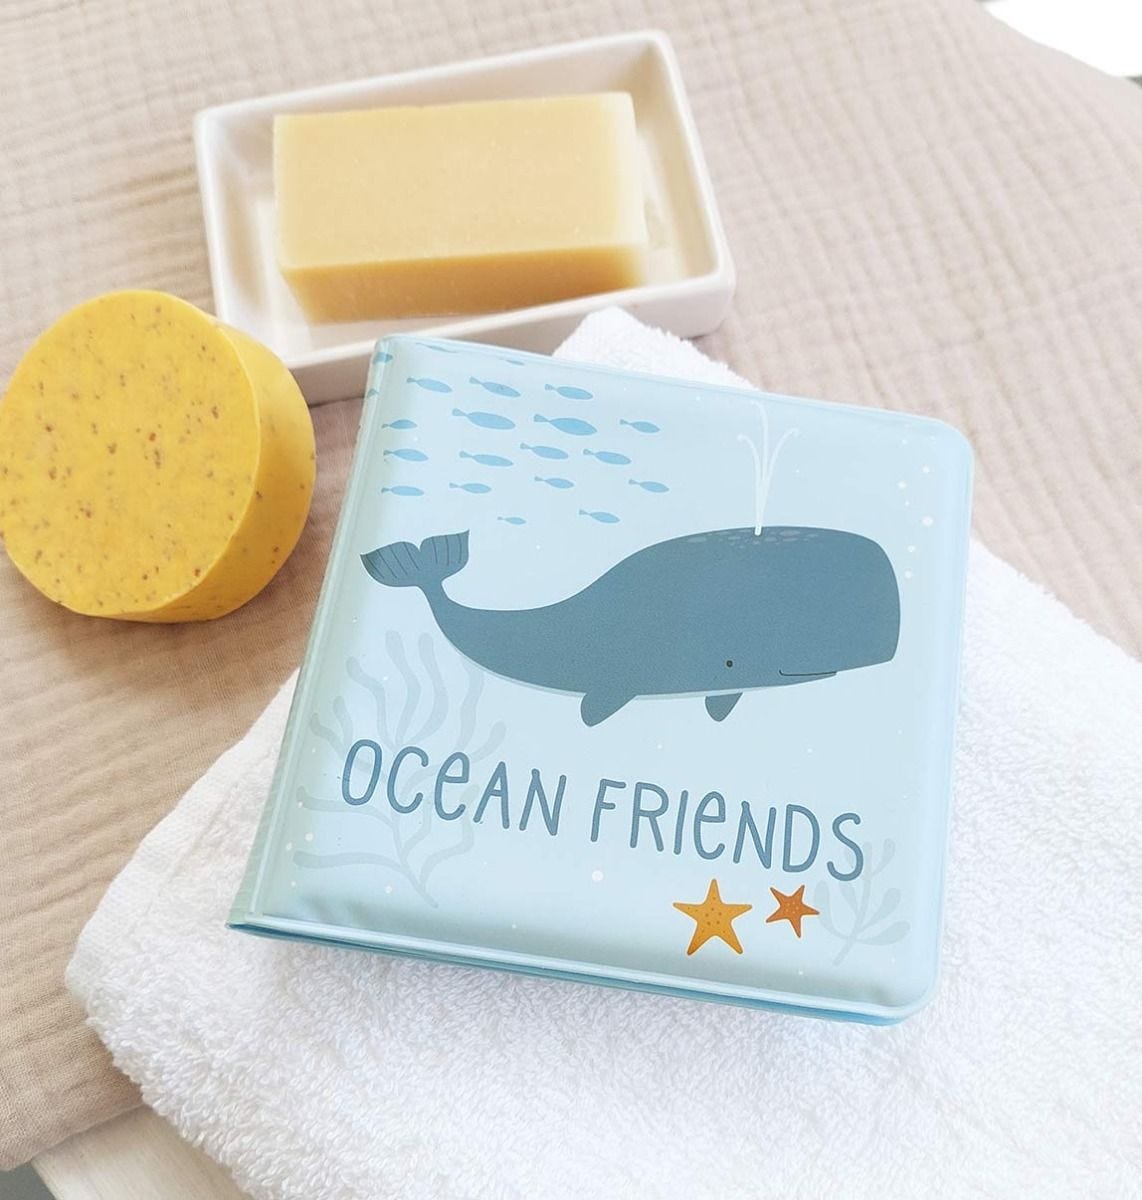 Afbeelding A Little Lovely Company badboekje I Ocean Friends